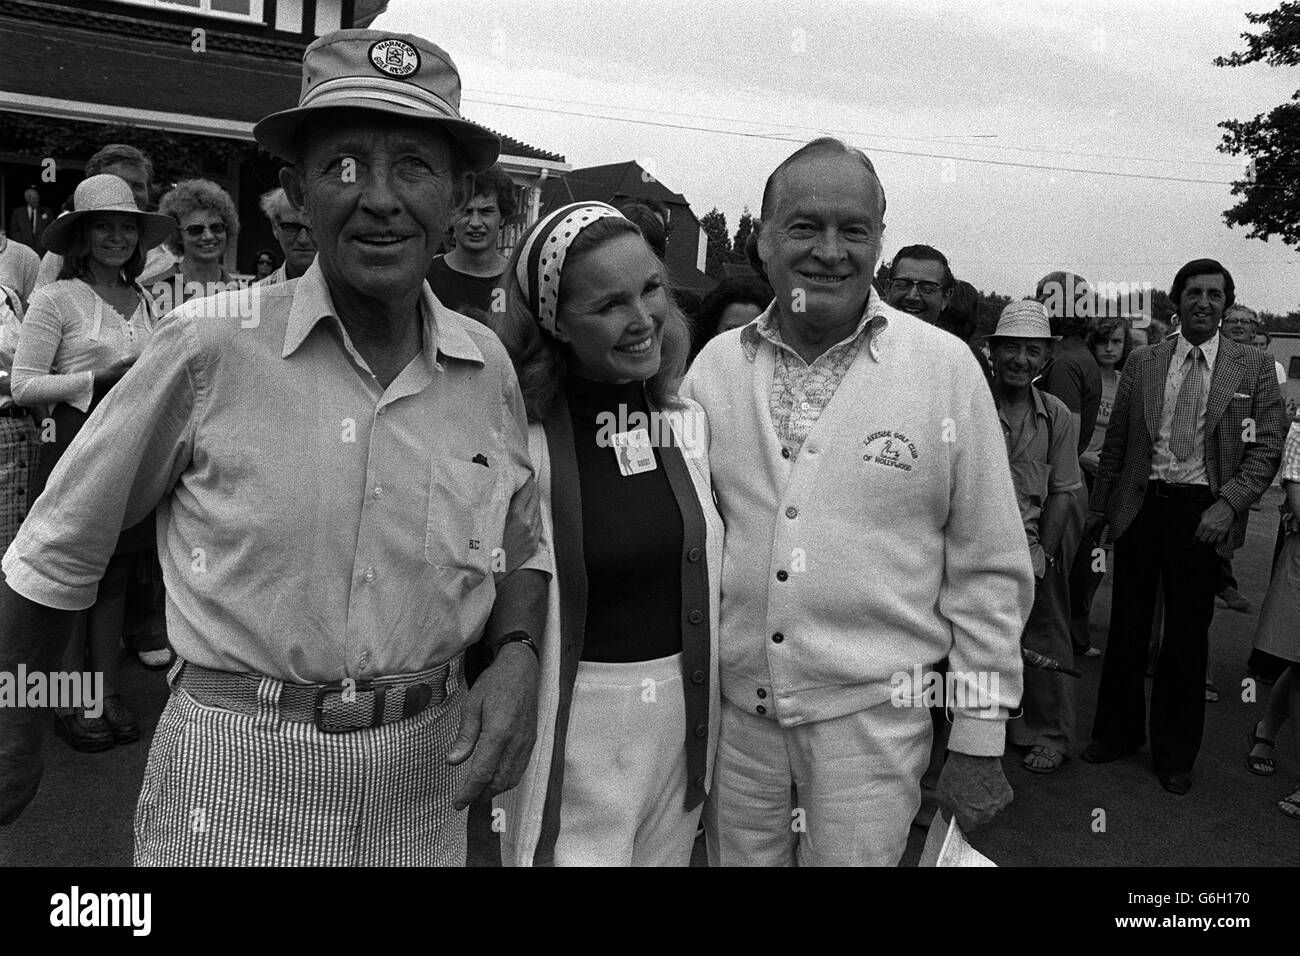 14 OCTOBRE: CE JOUR EN 1977, BING CROSBY MEURT.Bing Crosby et Bob Hope étaient parmi les concurrents d'un tournoi de golf Pro -Am à la veille des Championnats d'Europe féminine Colgate 30,000.La femme de Crosby, Katheryn, se tient entre les deux anciens combattants. Banque D'Images